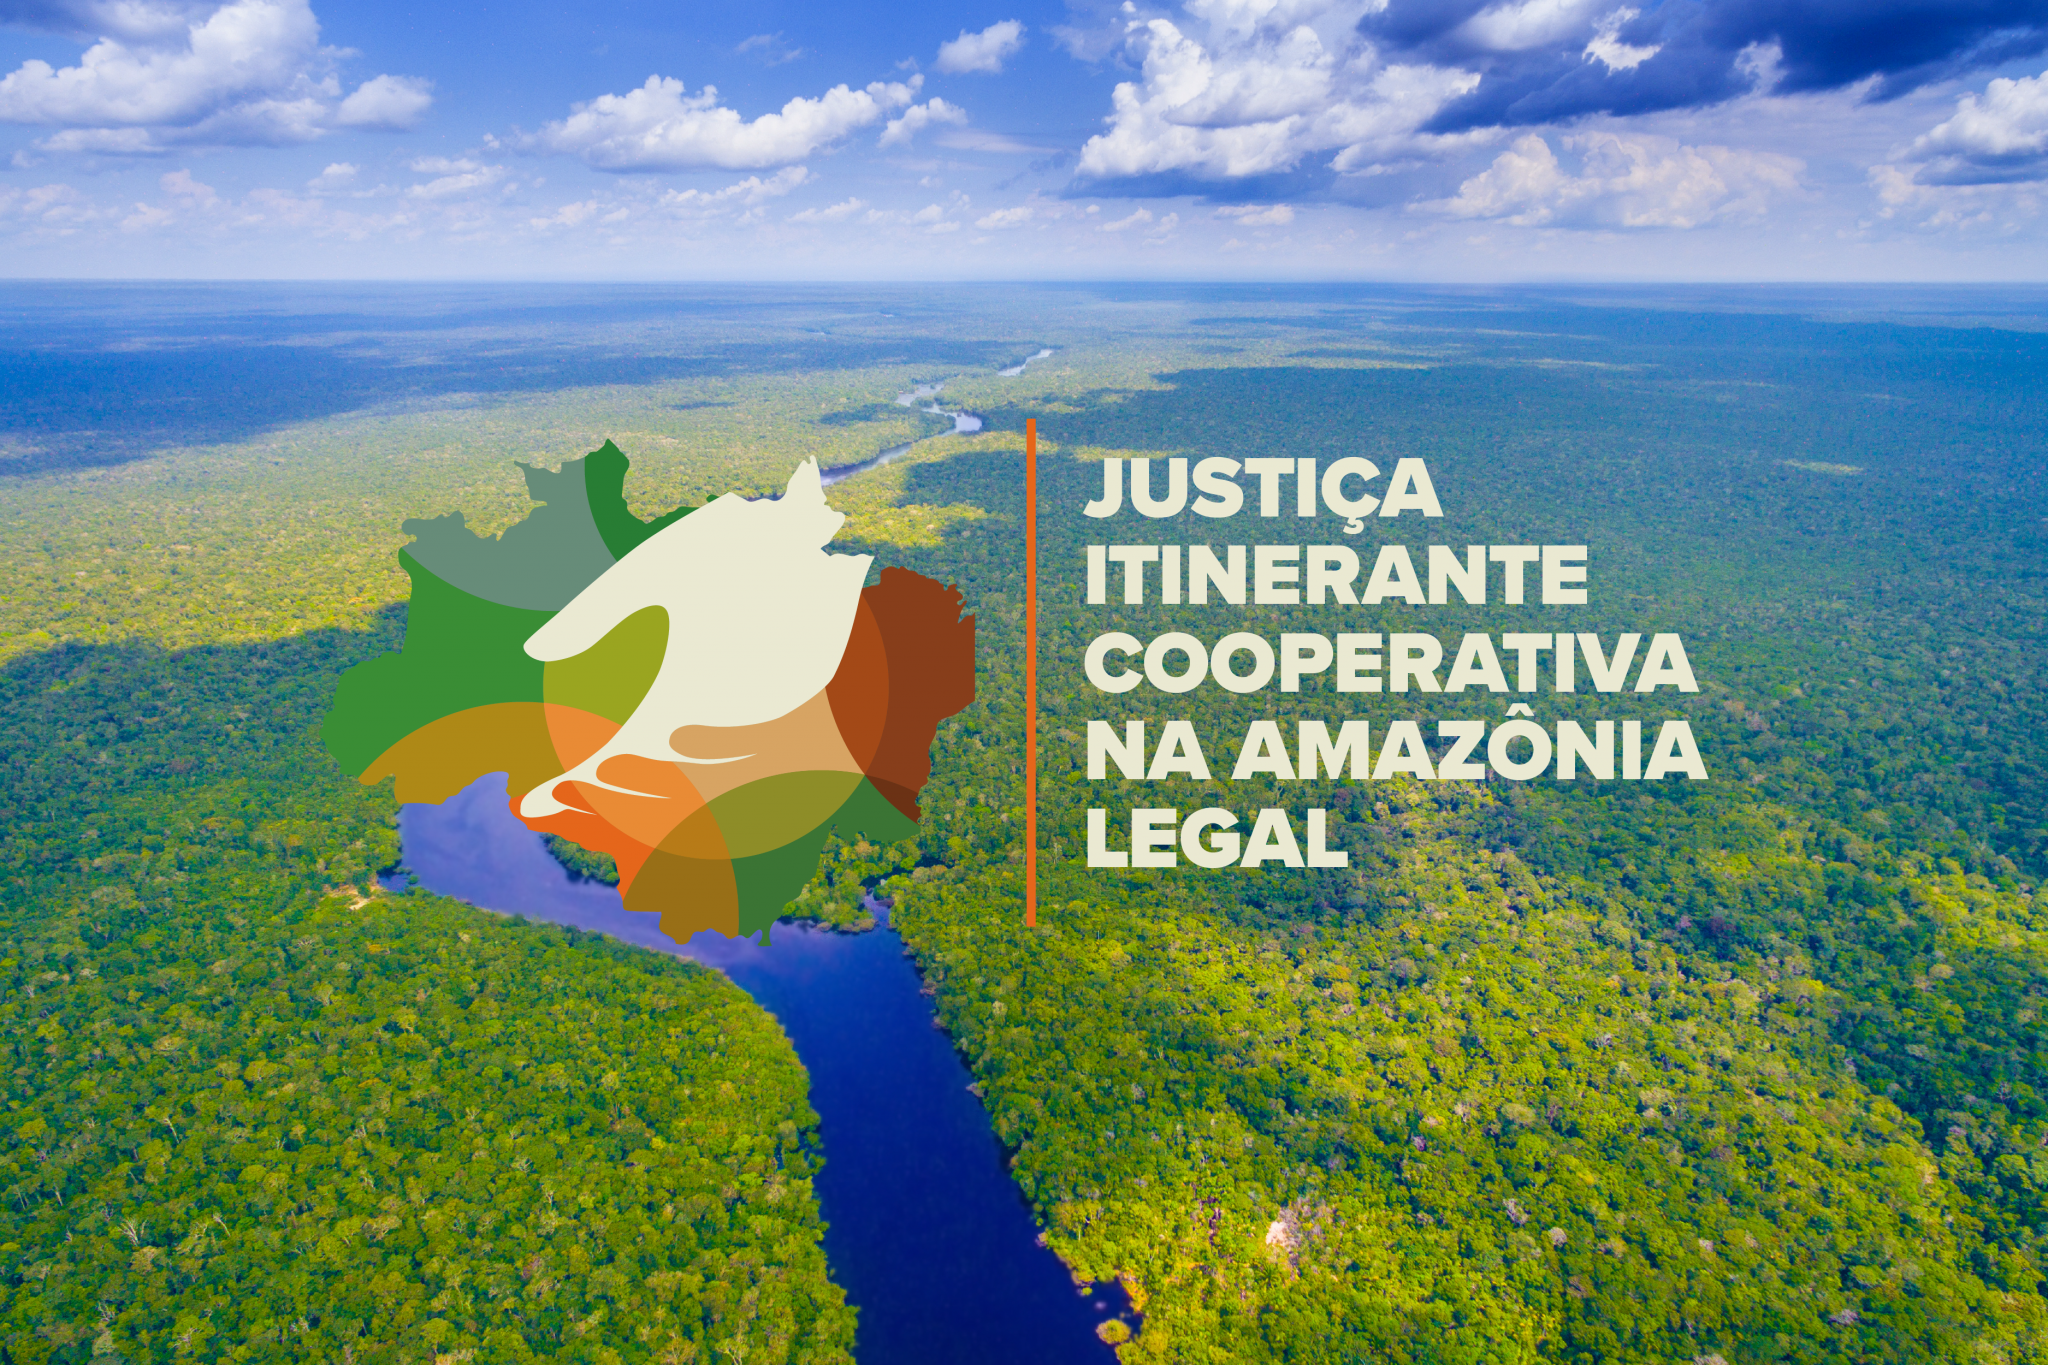 INSTITUCIONAL: Justiça Itinerante Cooperativa na Amazônia Legal conta com programação educativa